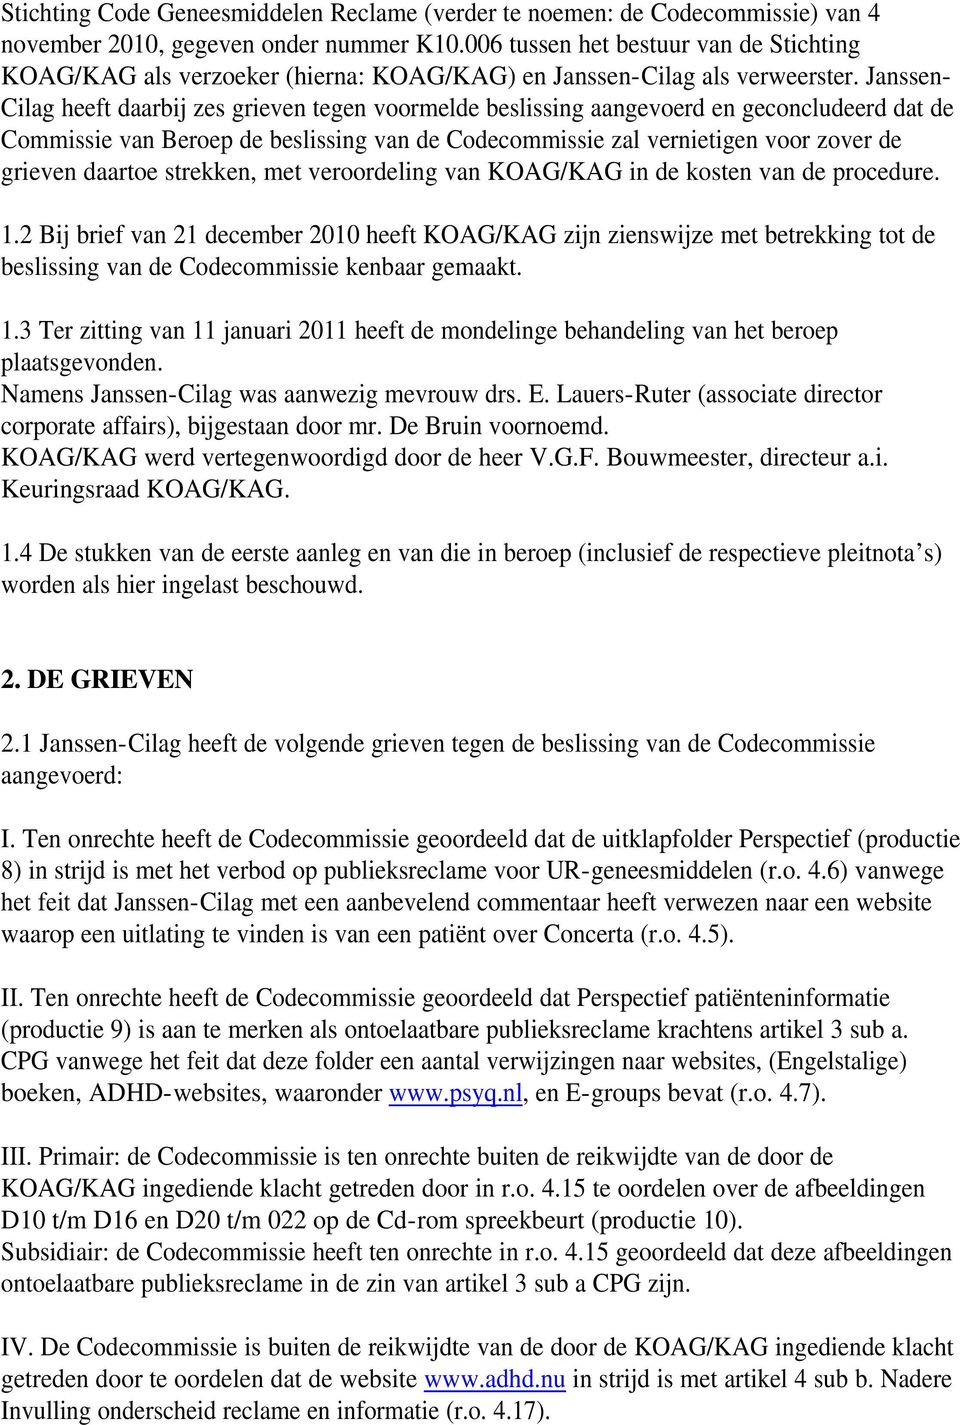 Janssen- Cilag heeft daarbij zes grieven tegen voormelde beslissing aangevoerd en geconcludeerd dat de Commissie van Beroep de beslissing van de Codecommissie zal vernietigen voor zover de grieven